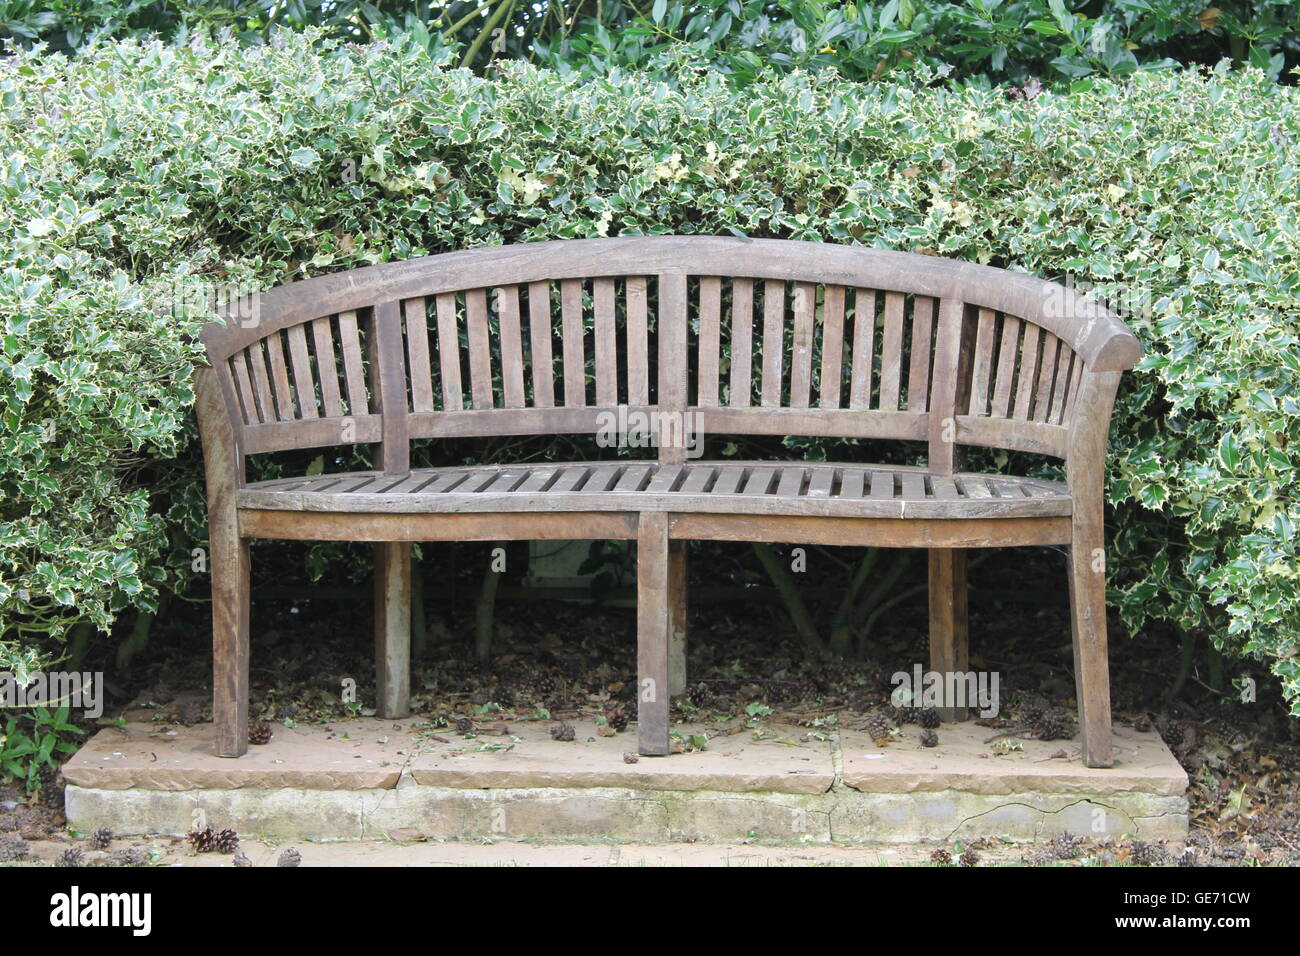 Garden bench, gardening, summer, summertime, garden, party, outdoor seating, garden seating, Burrows Gardens Stock Photo